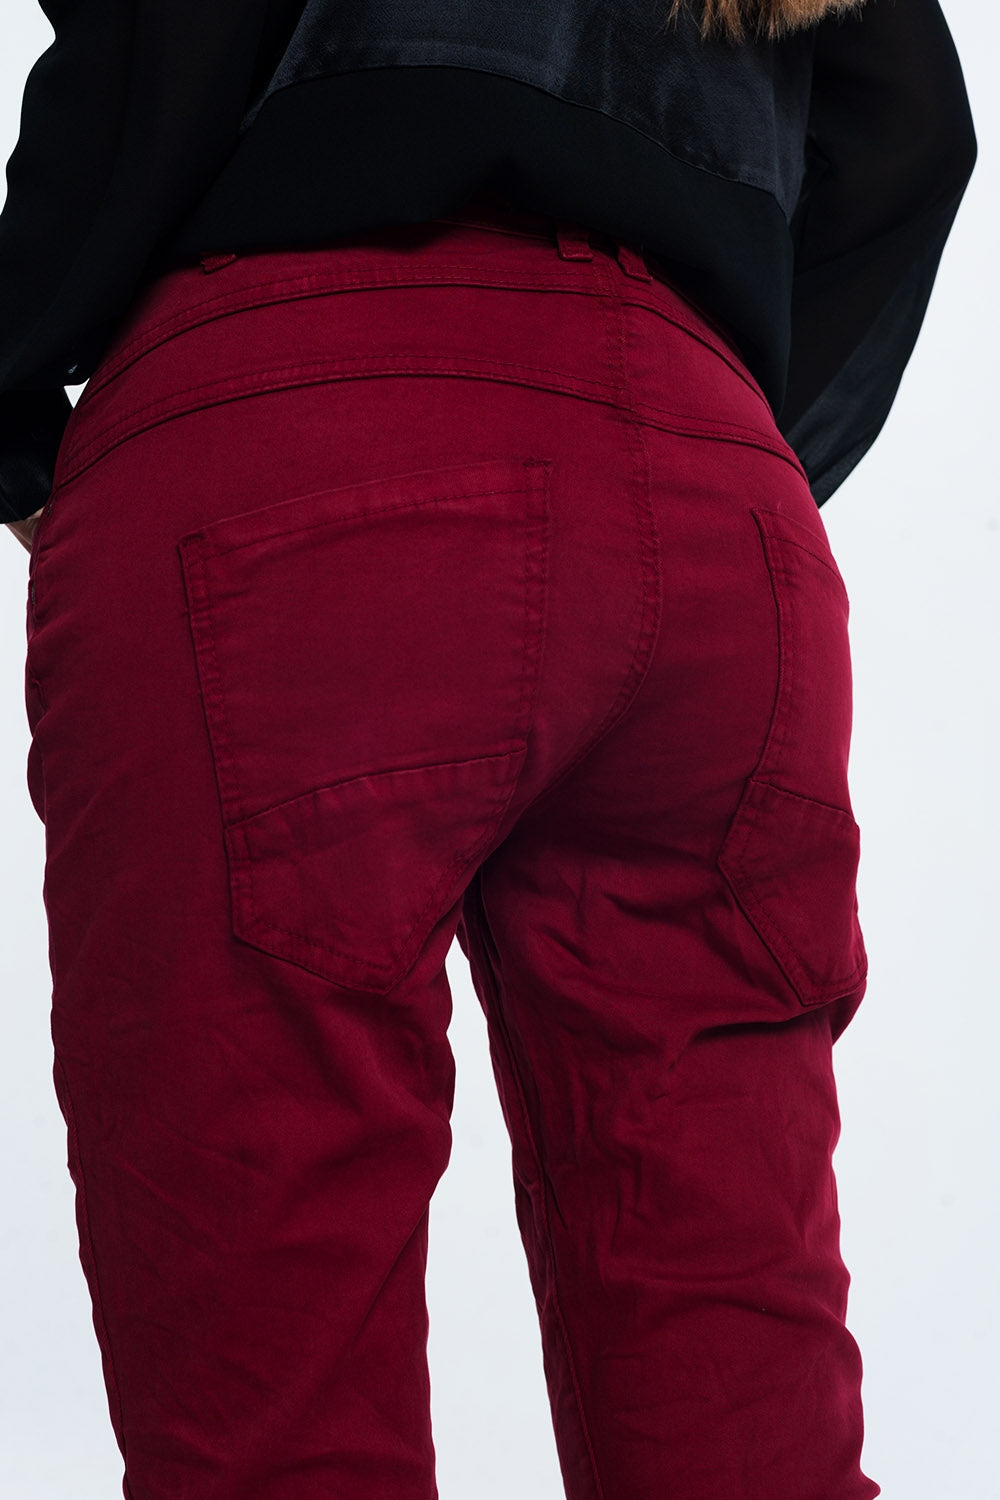 TEEK - The Drop Crotch Skinny Jeans | Maroon PANTS TEEK M   